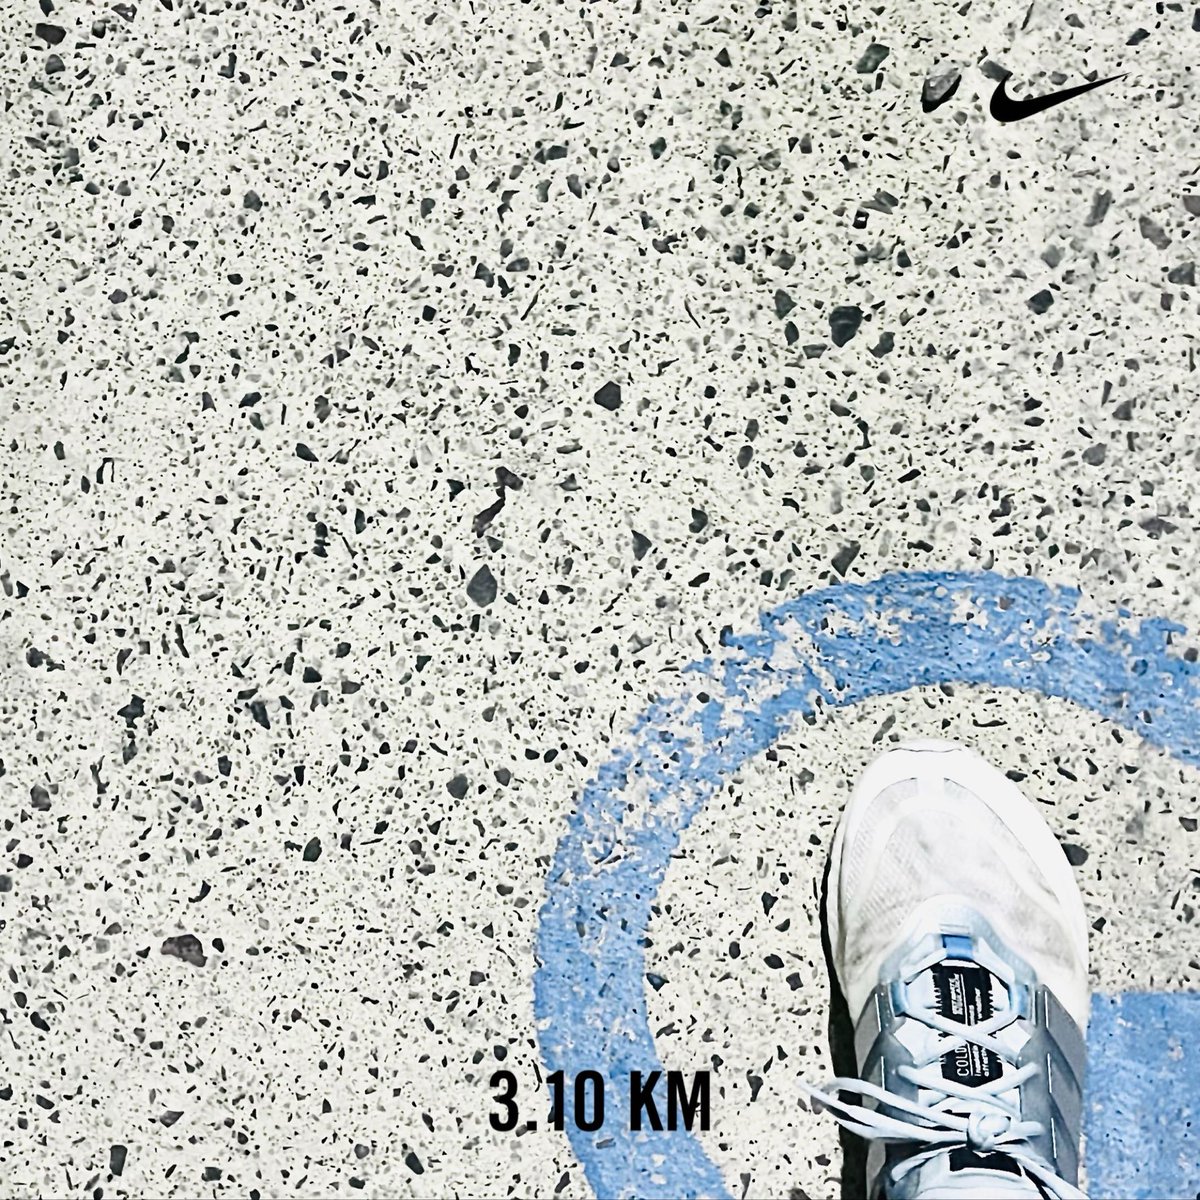 #EnLaCiudad vuelta de martes
#Abril 
#April
#RecoveryRun
#Run
#Runner
#Runners
#Running
#JustRun
#KeepRunning
#Nike
#NikePlus
#NikeRunning
#NikeRunningDivision
#Adidas
#AdidasBoost
#AdidasUltraBoost
#AdidasUltraBoostLight
#ImpossibleIsNothing
#Ultraboost
#NikeRunClub
#NRC